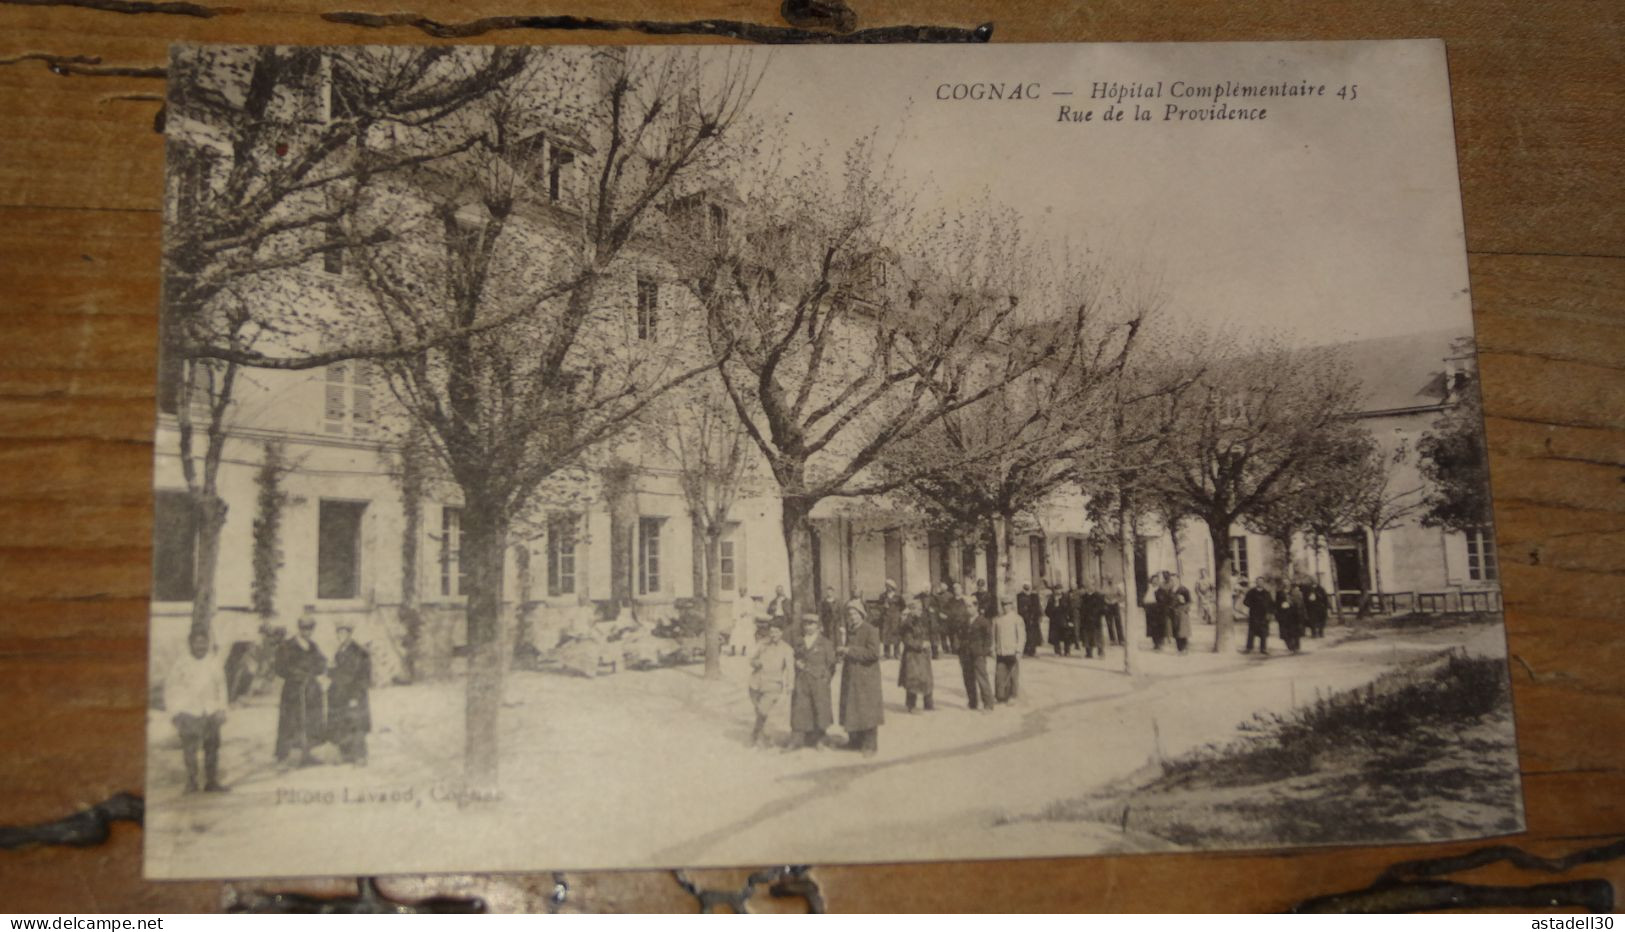 COGNAC, Hopital Complémentaire 45, Rue De La Providence  ................ 19177 - Cognac